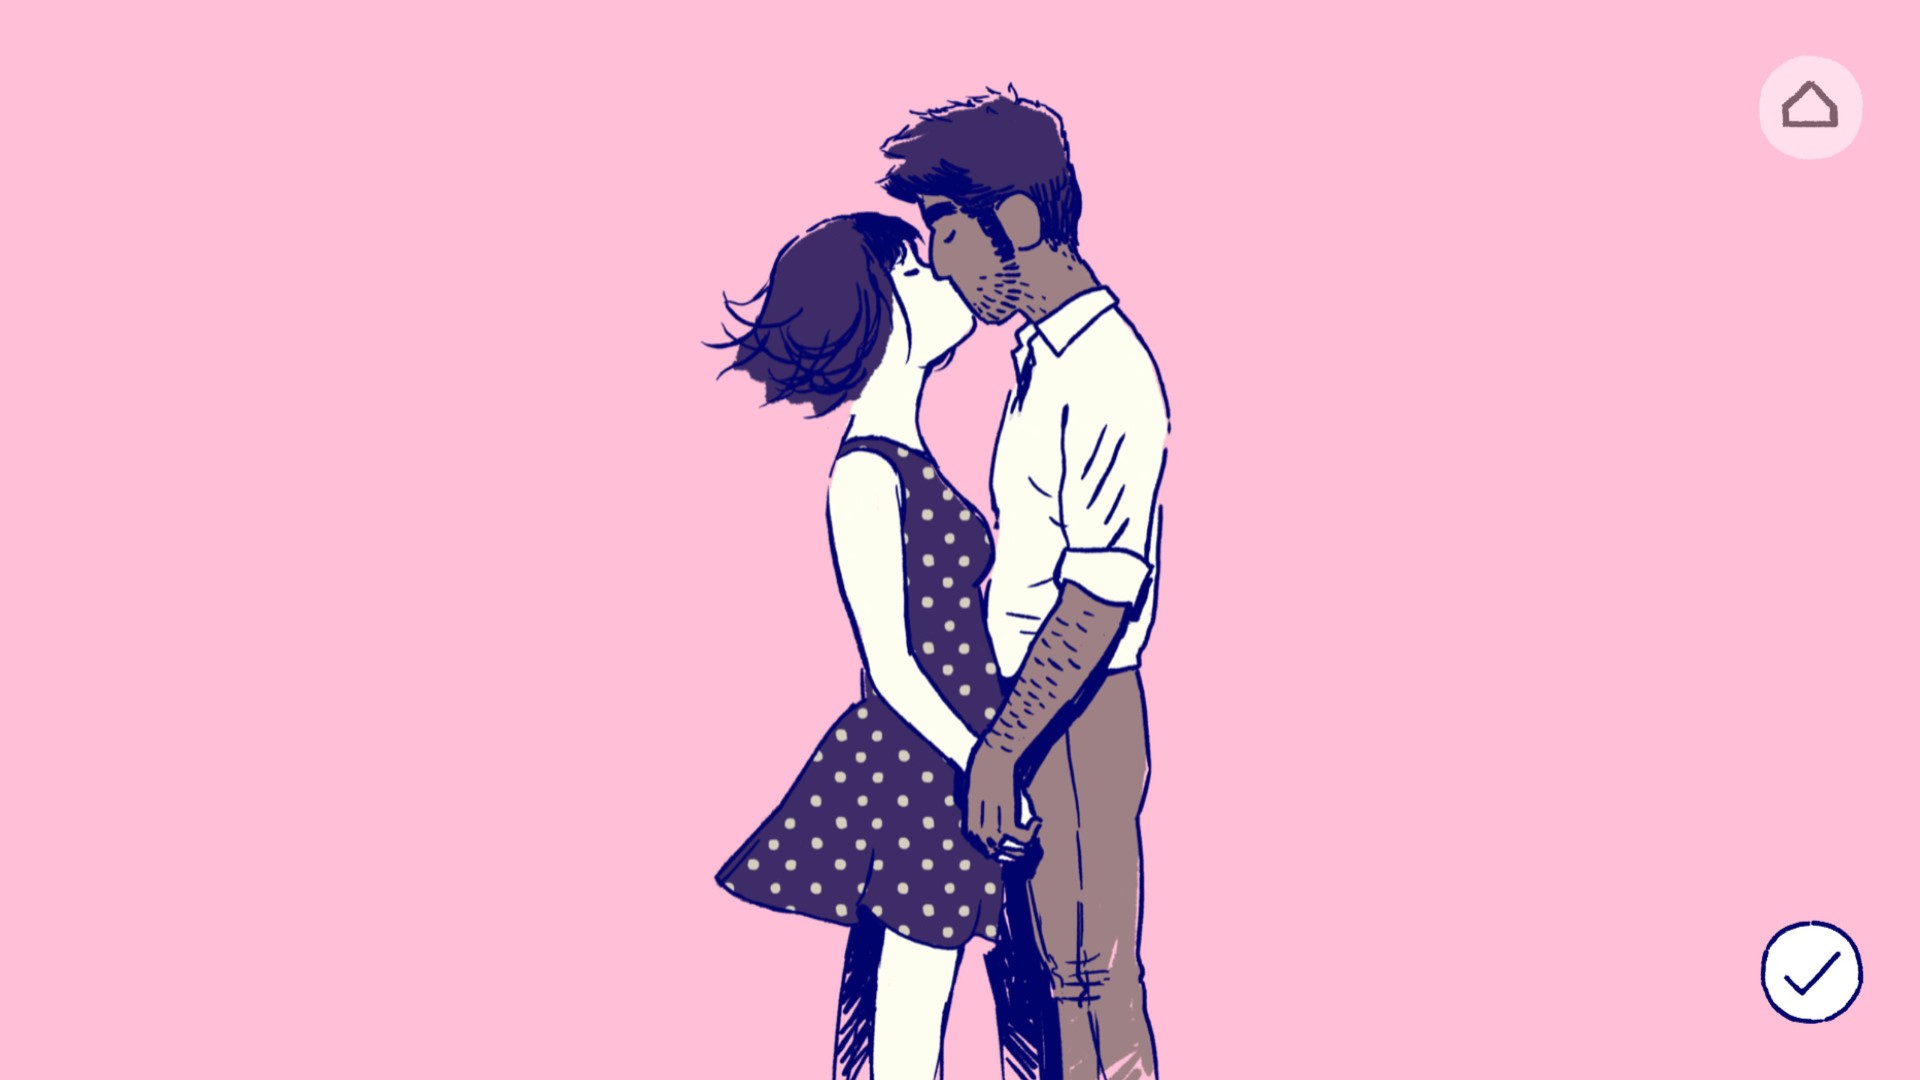 Bästa mobila pusselspel: Florens. Bilden visar två personer som kysser romantiskt